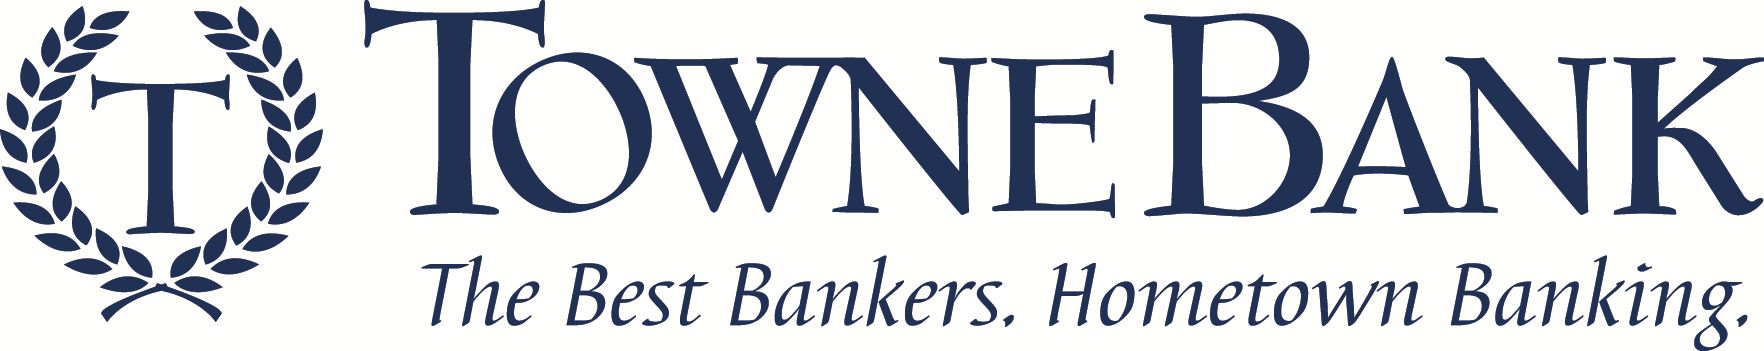 TowneBank logo